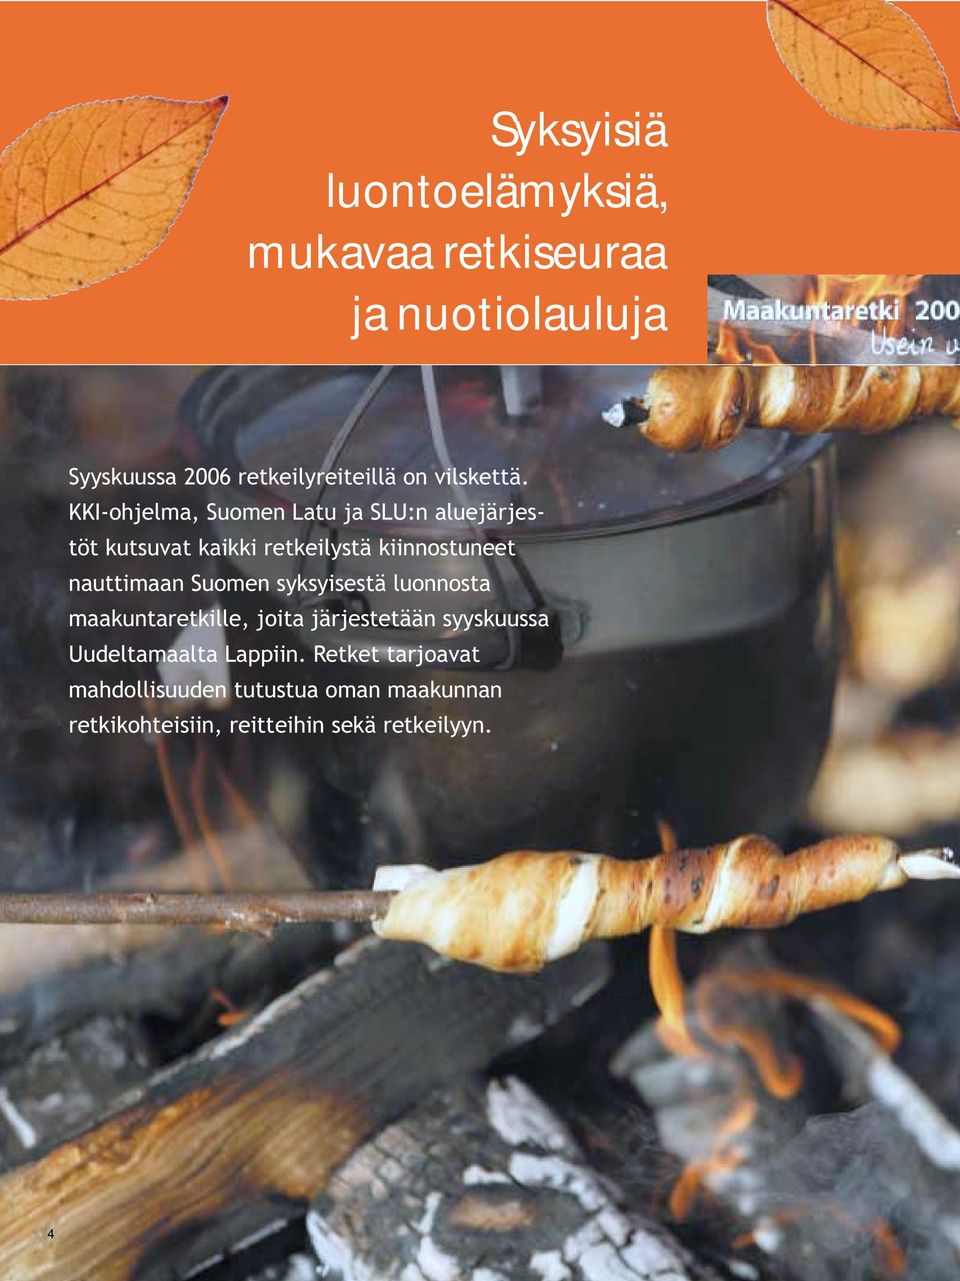 KKI-ohjelma, Suomen Latu ja SLU:n aluejärjestöt kutsuvat kaikki retkeilystä kiinnostuneet nauttimaan